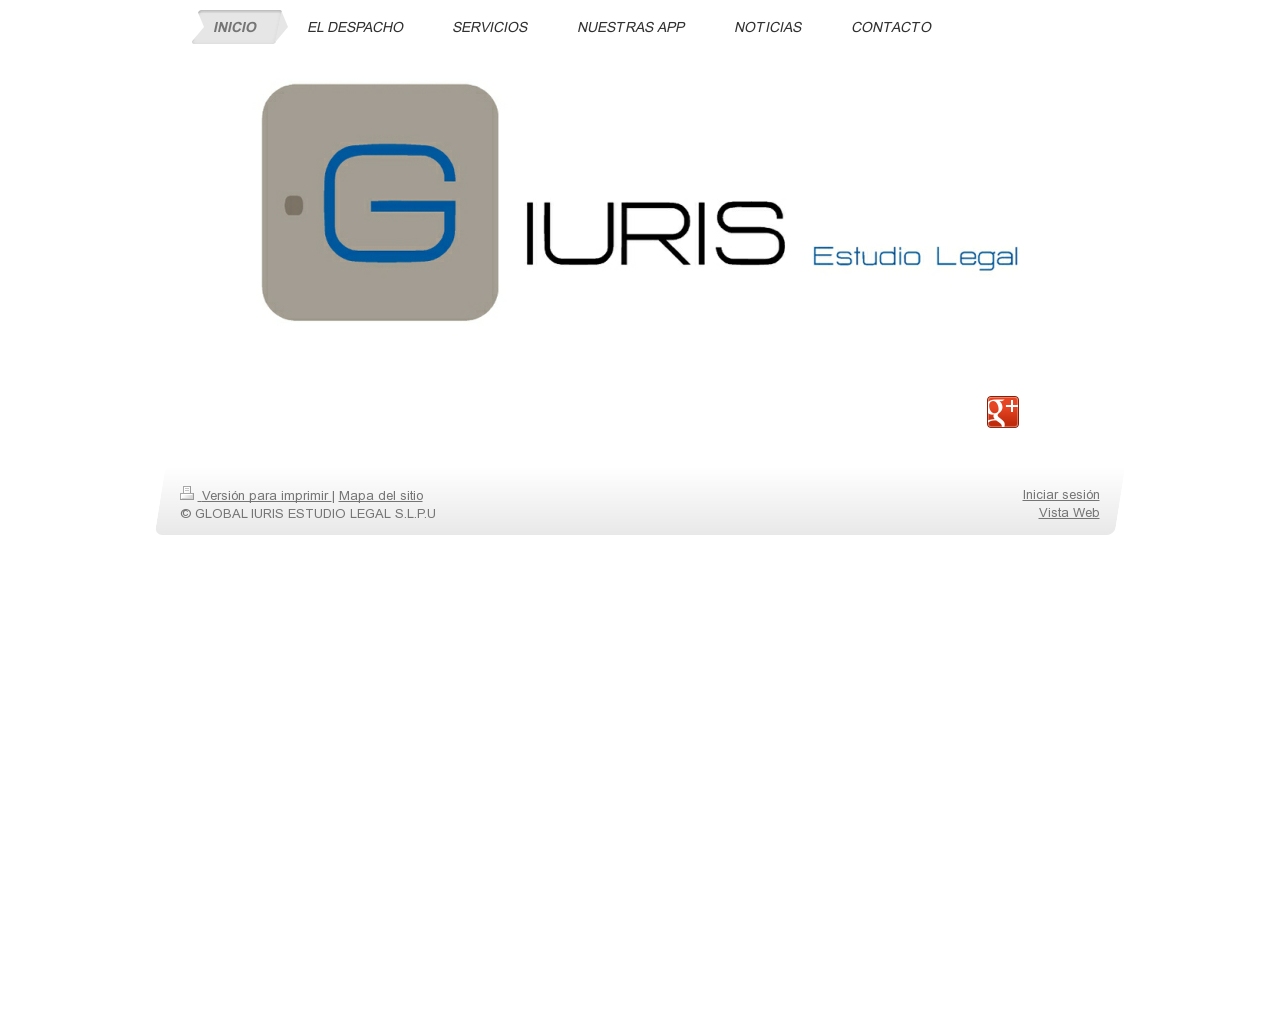 El sitio de la imagen g-iuris.es en 1280x1024